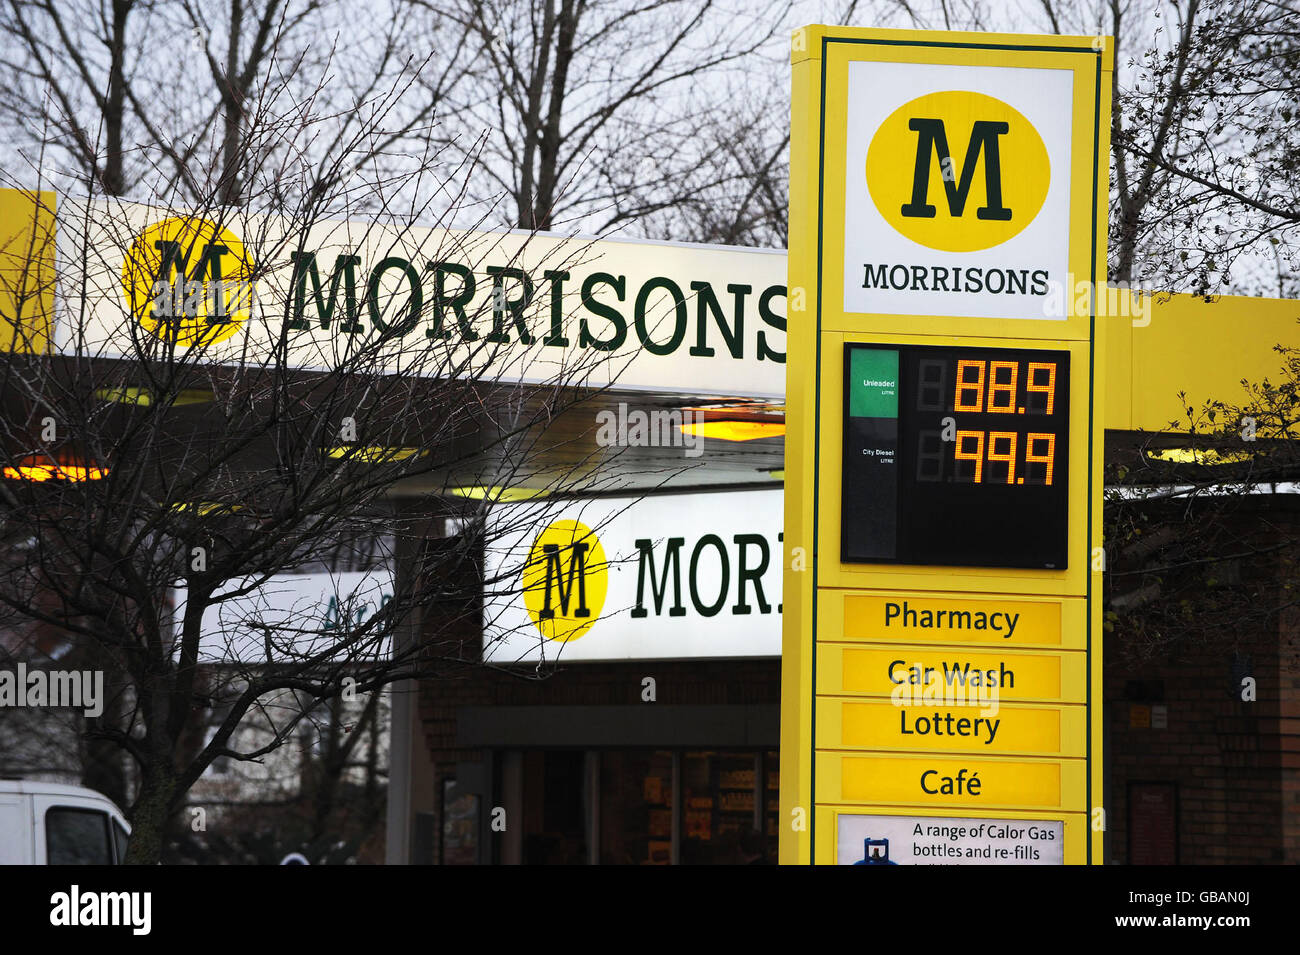 Morrisons senkt den Dieselpreis. S Tankstellenvorplatz in Whitley Bay, North Tyneside. Stockfoto